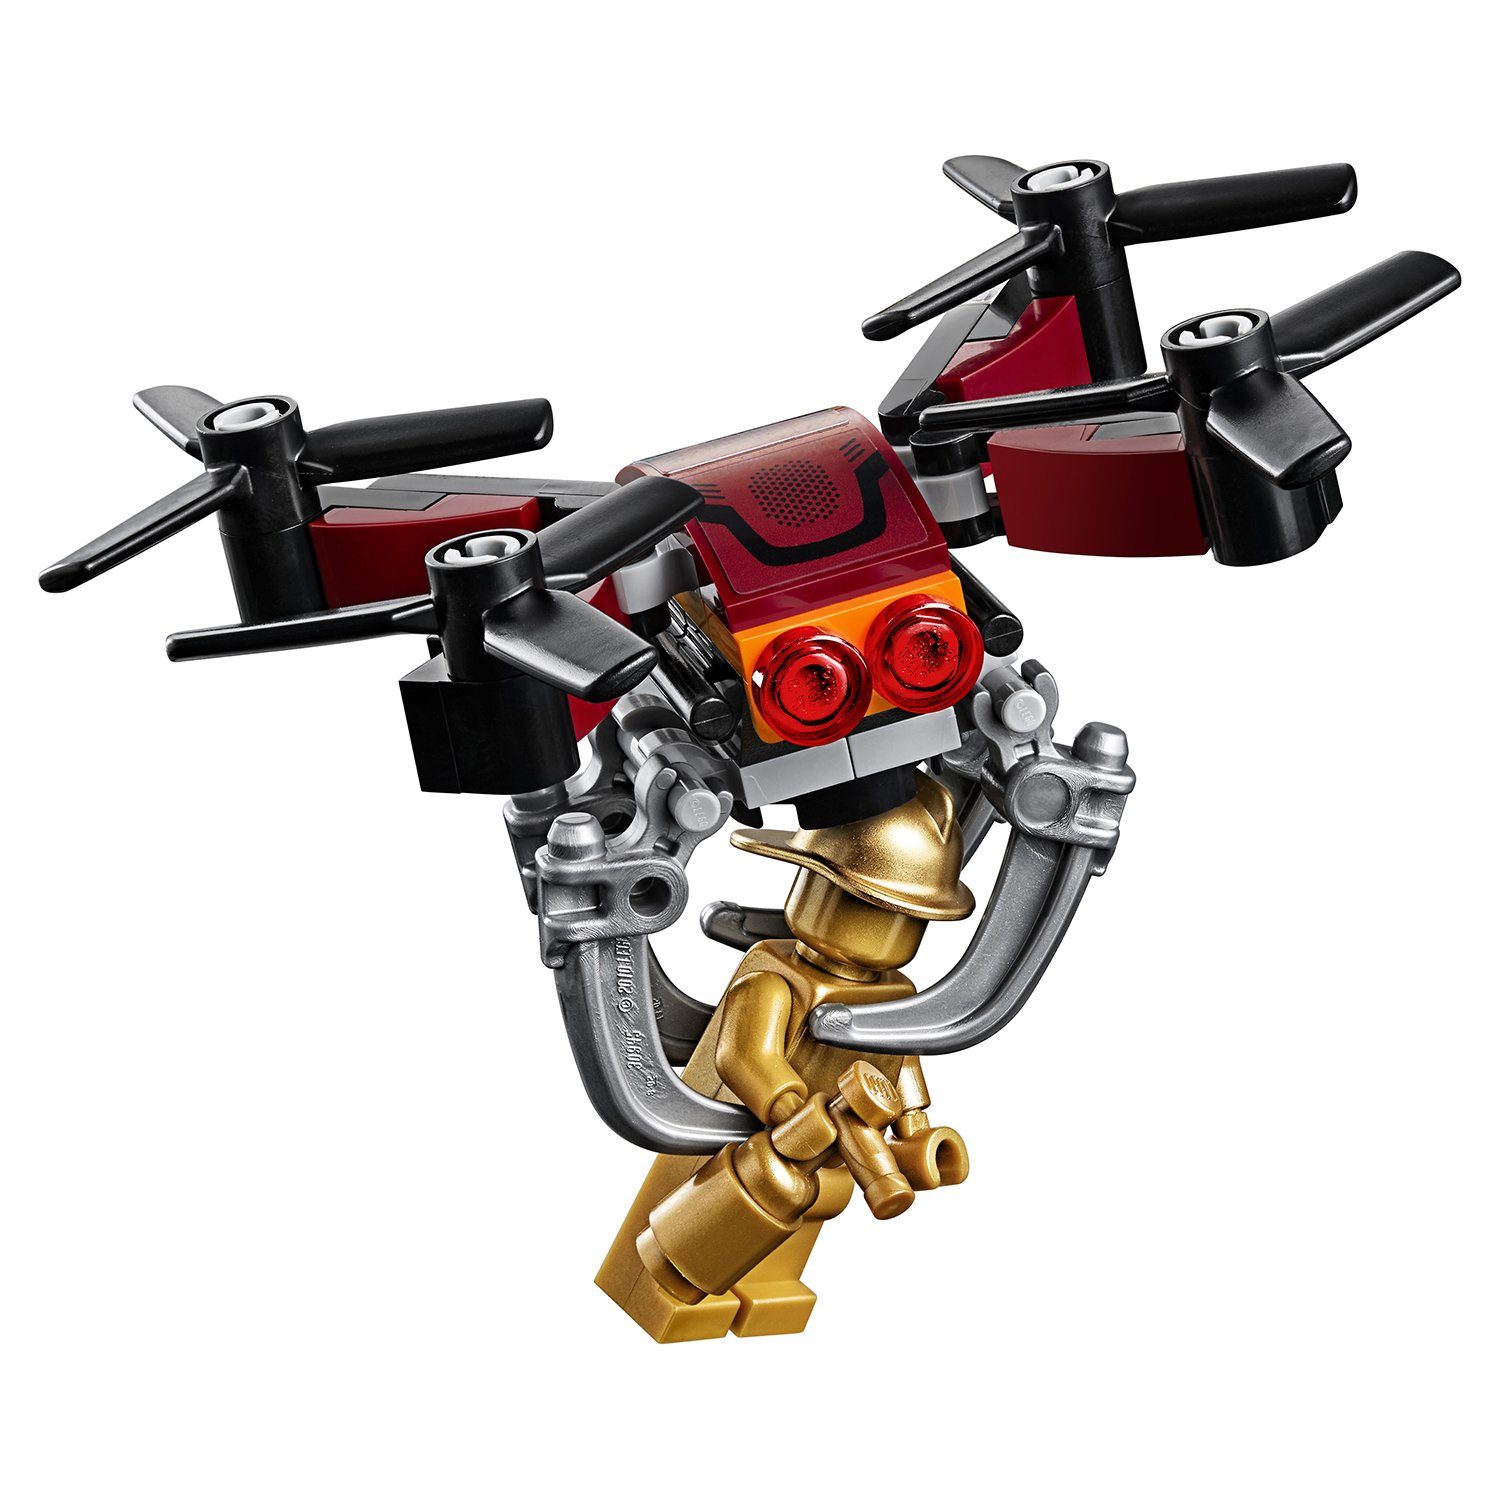 Lego City 60207 Воздушная полиция: Погоня дронов